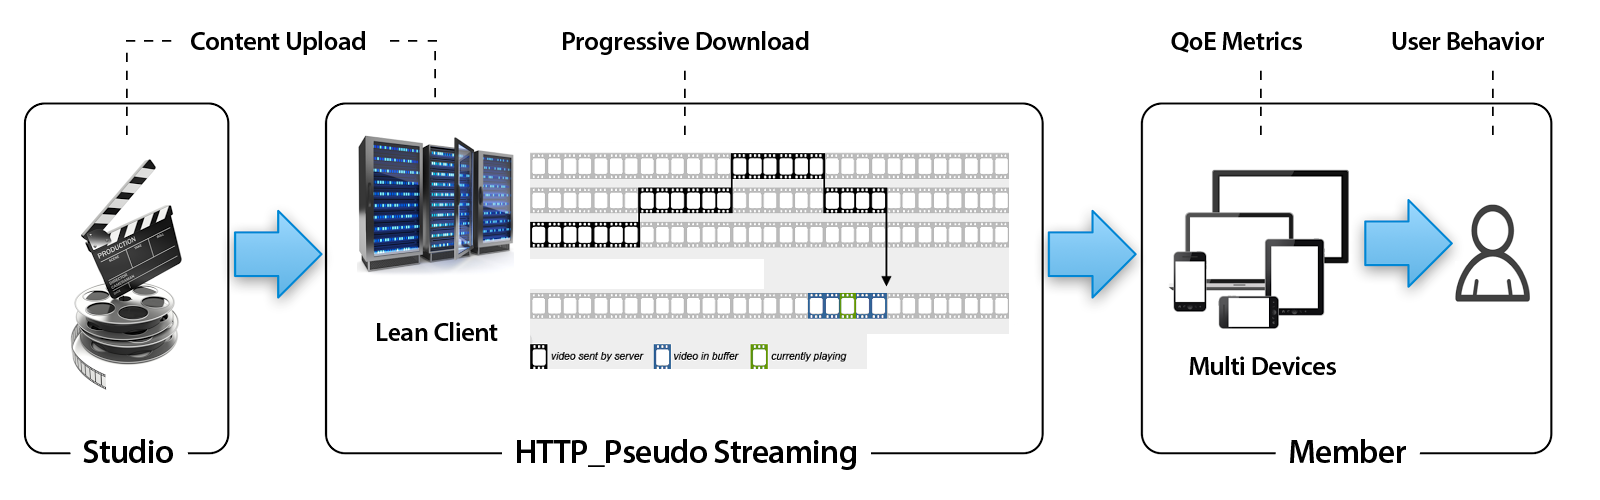 HTTP-Pseudo 스트리밍 구조도